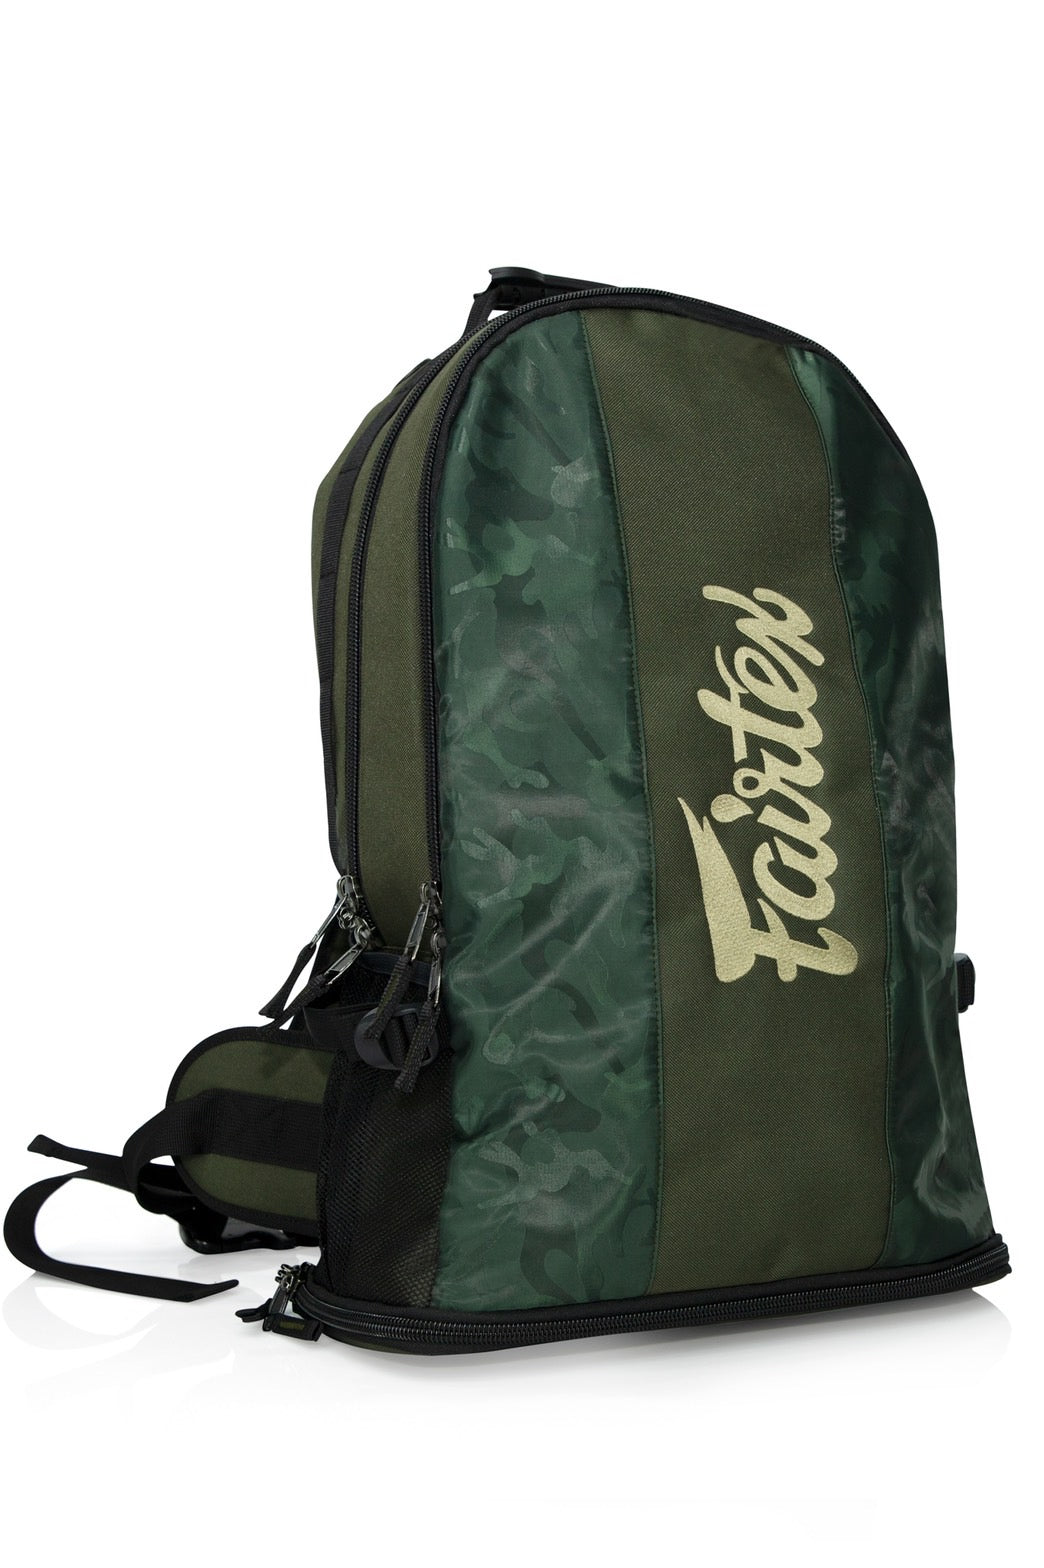 Fairtex กระเป๋ายิม / กระเป๋าเป้สะพายหลัง 4 ลายพรางสีเขียวดำ